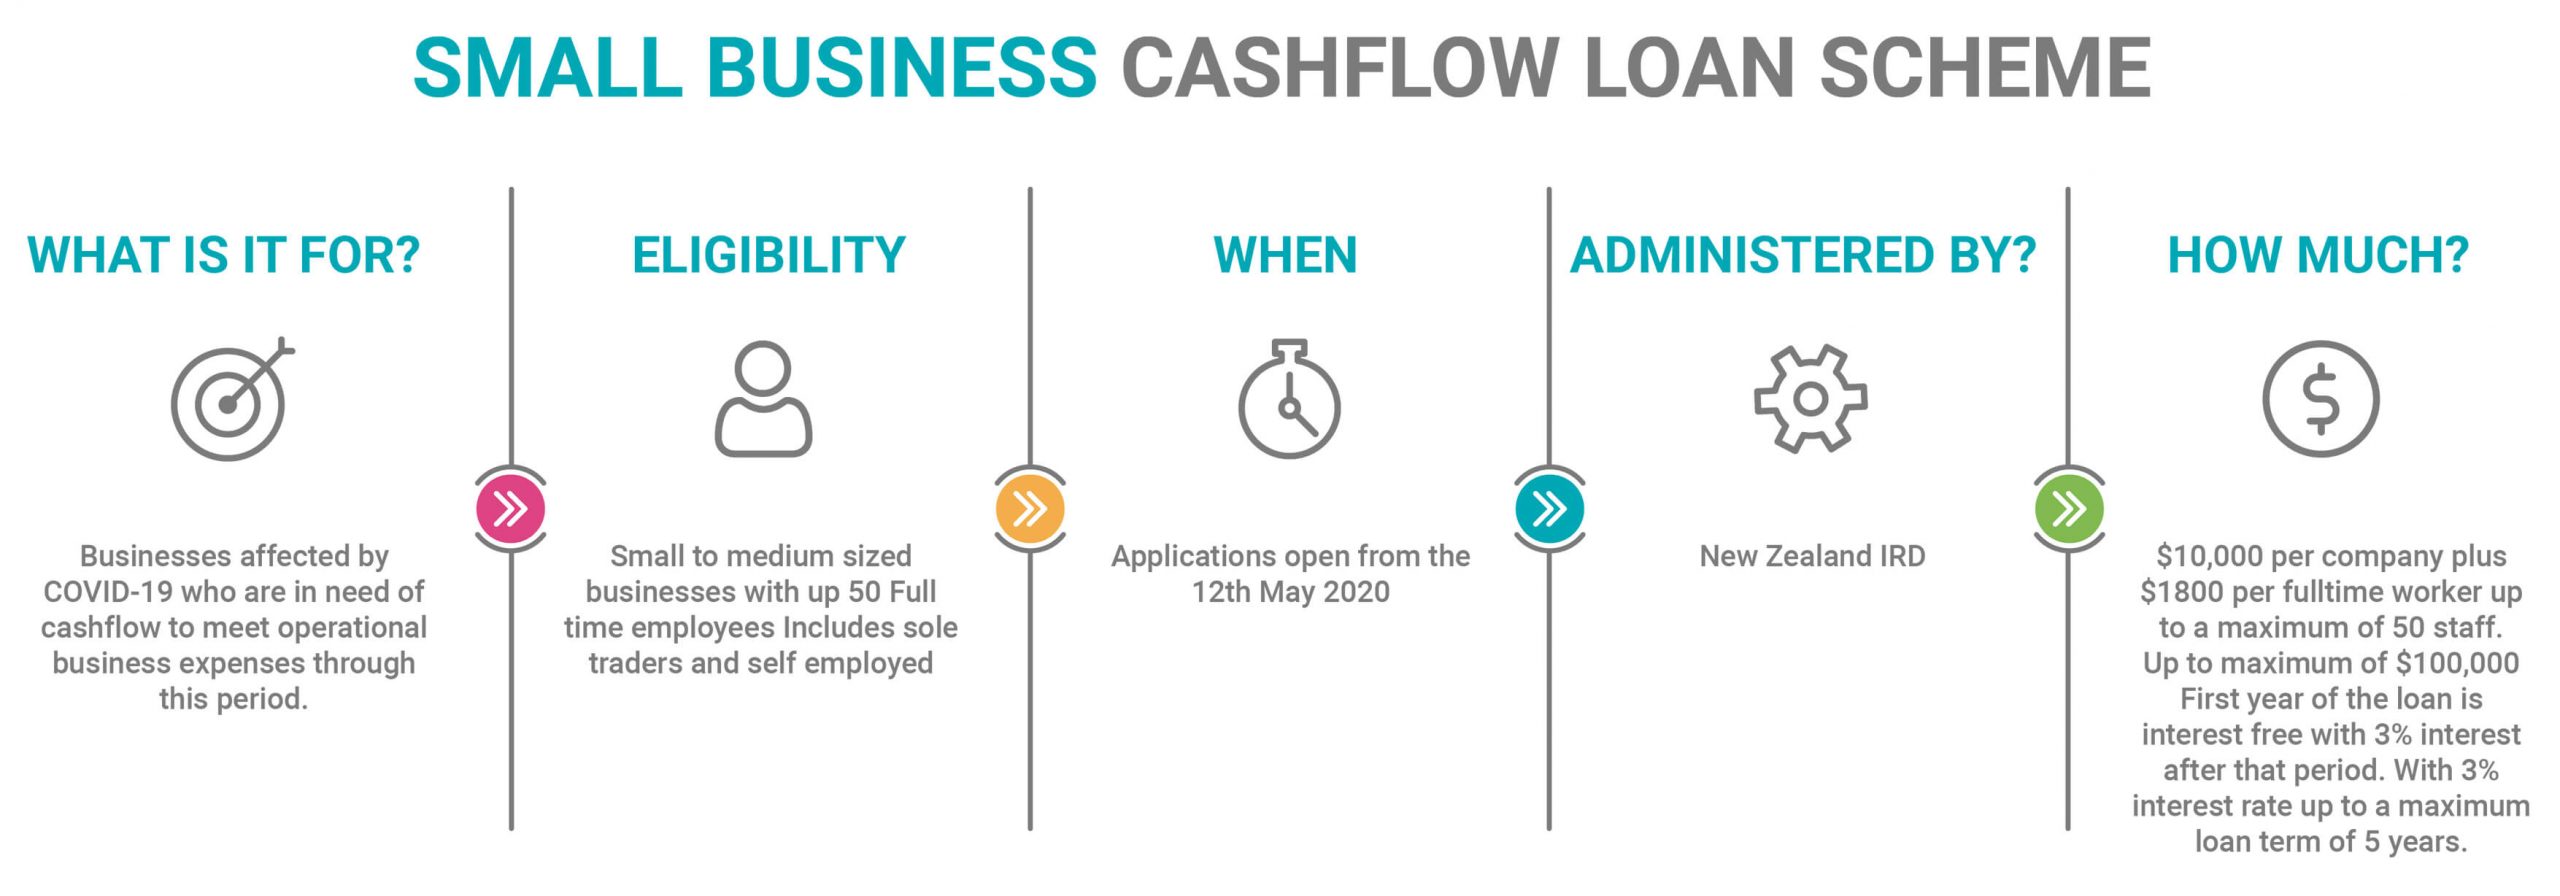 Small Business Cashflow Loan